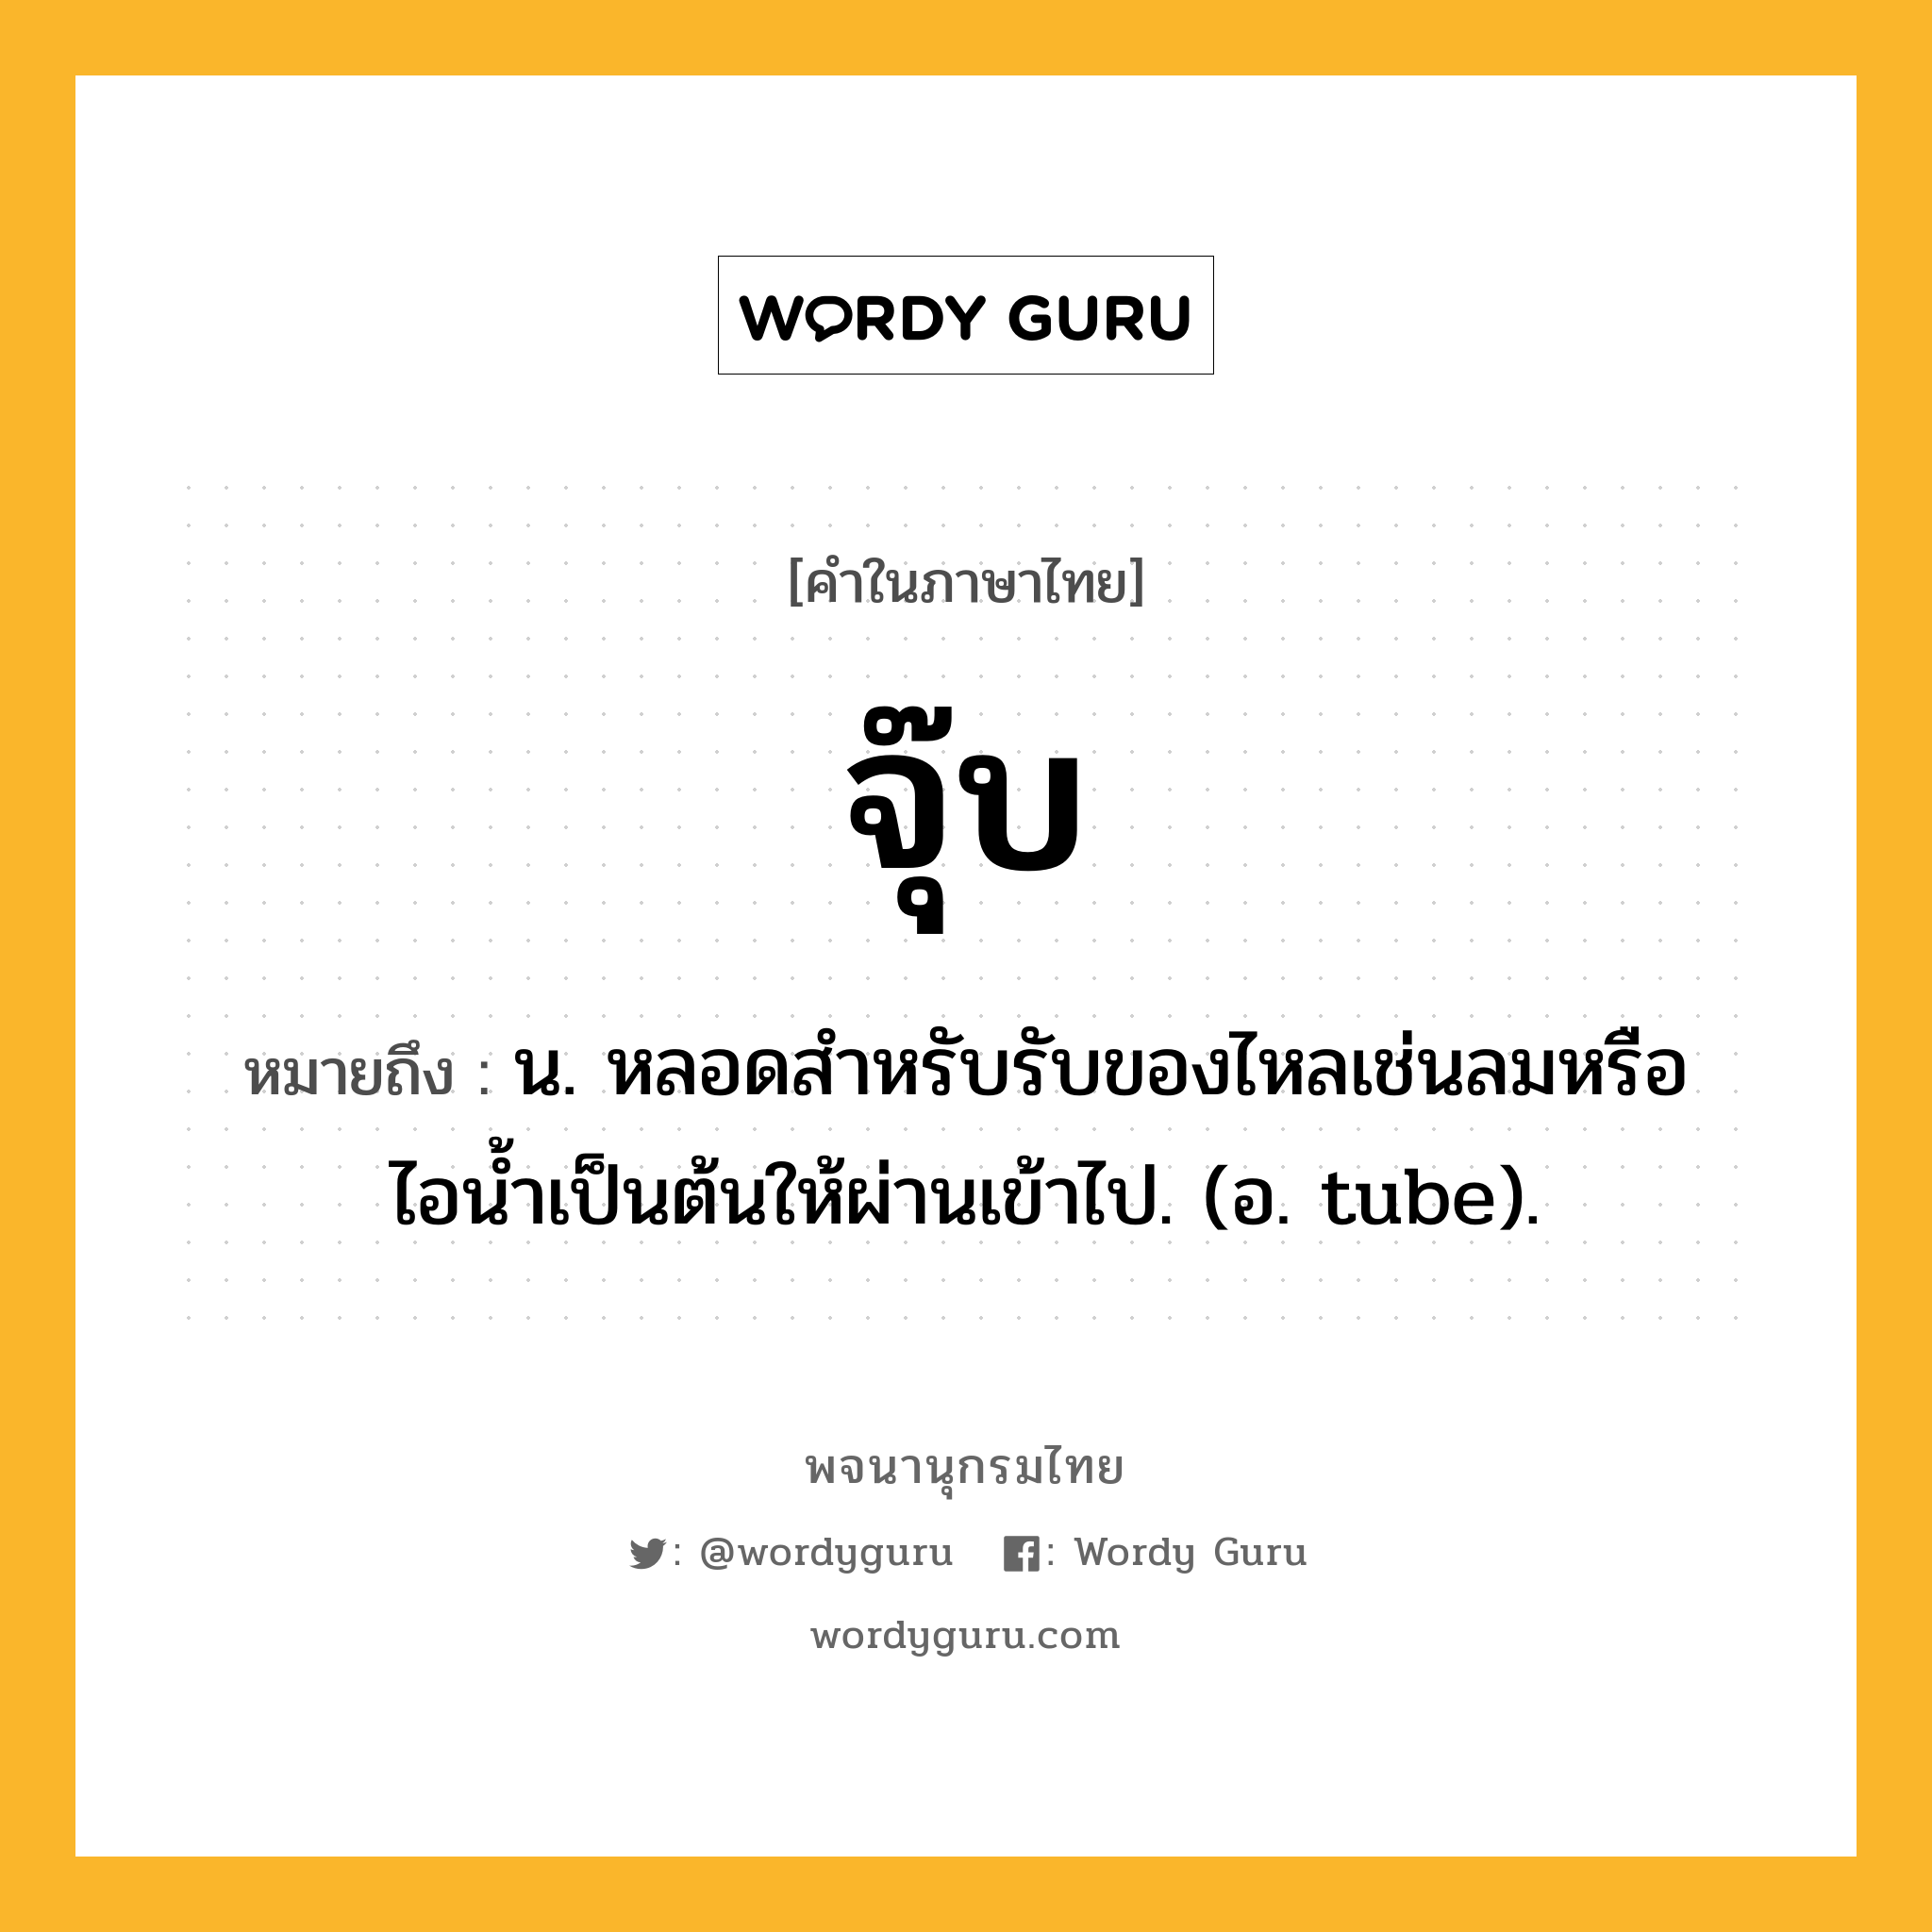 จุ๊บ ความหมาย หมายถึงอะไร?, คำในภาษาไทย จุ๊บ หมายถึง น. หลอดสําหรับรับของไหลเช่นลมหรือไอนํ้าเป็นต้นให้ผ่านเข้าไป. (อ. tube).